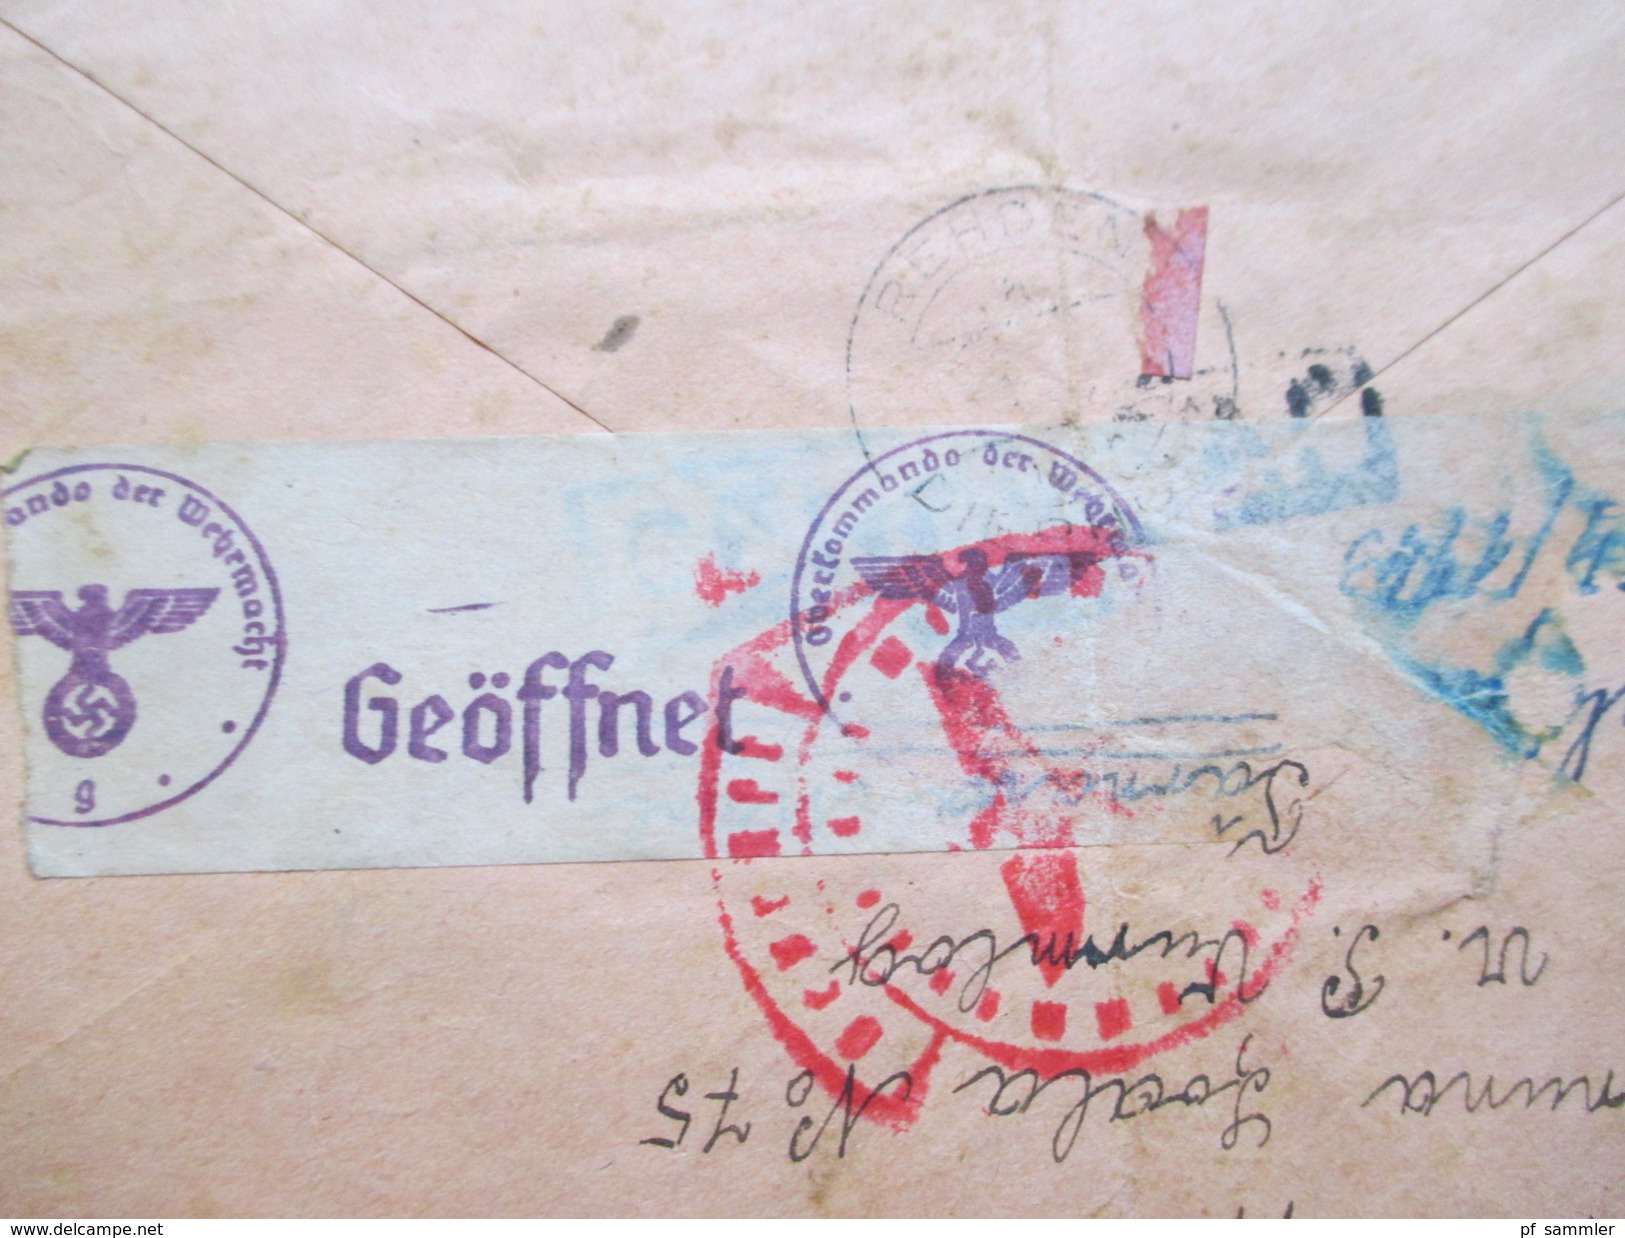 Rumänien / Deutsches Reich 1943 R-Brief AG Autorizata No 61. Zensur der Wehrmacht. Viele Zensurstempel!!Geöffnet!